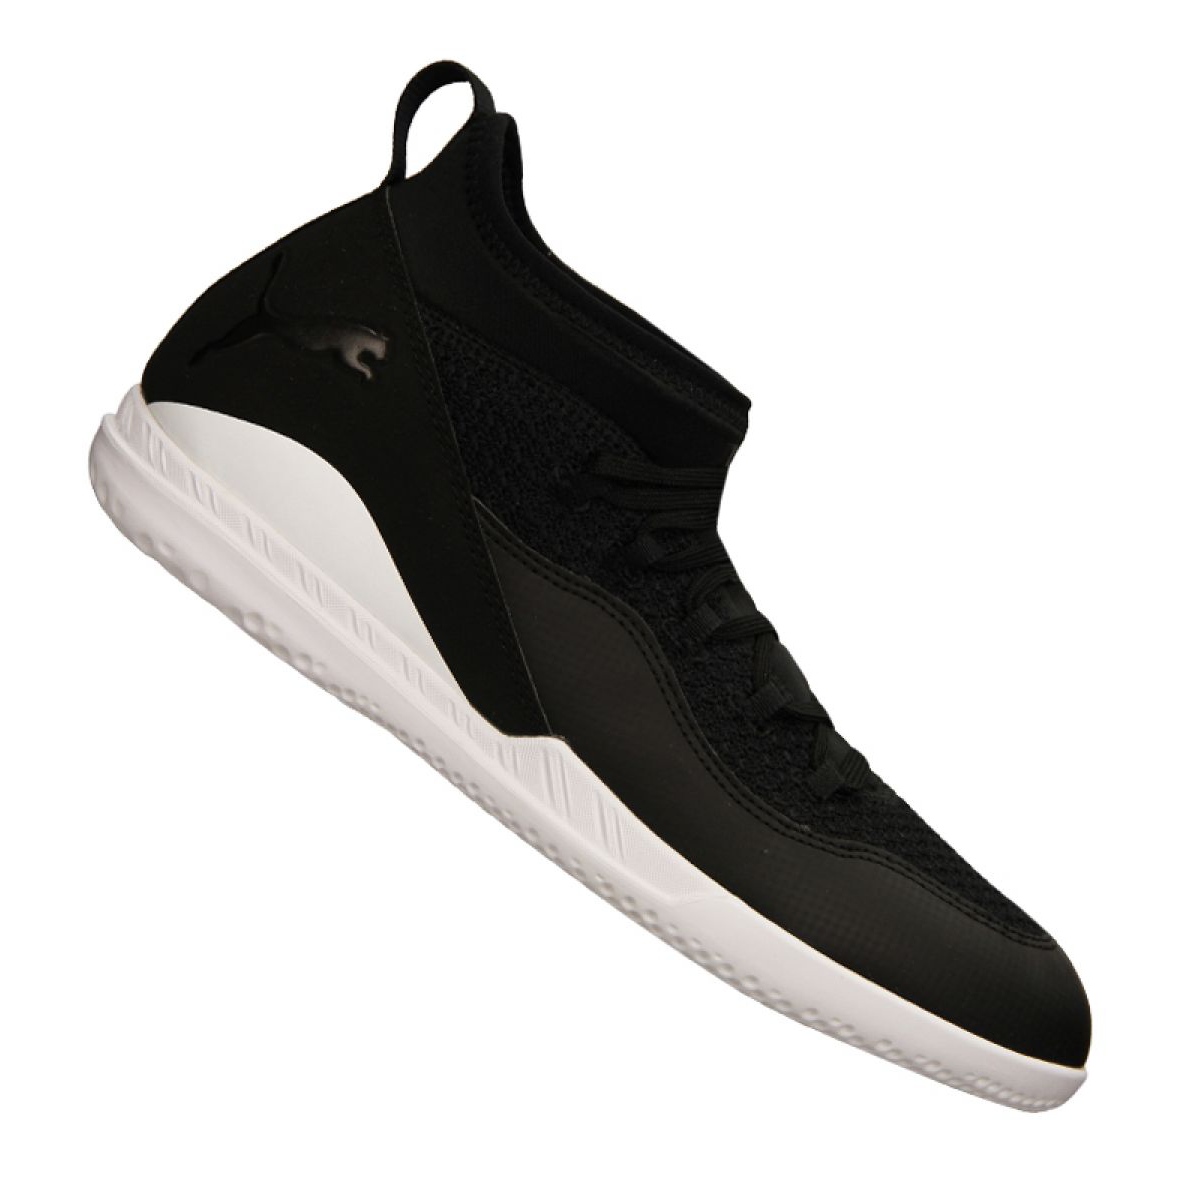 Ortografía inversión Preservativo Nike Indoor shoes Puma 365 Ff 3 Ct M 105516 03 black black - KeeShoes